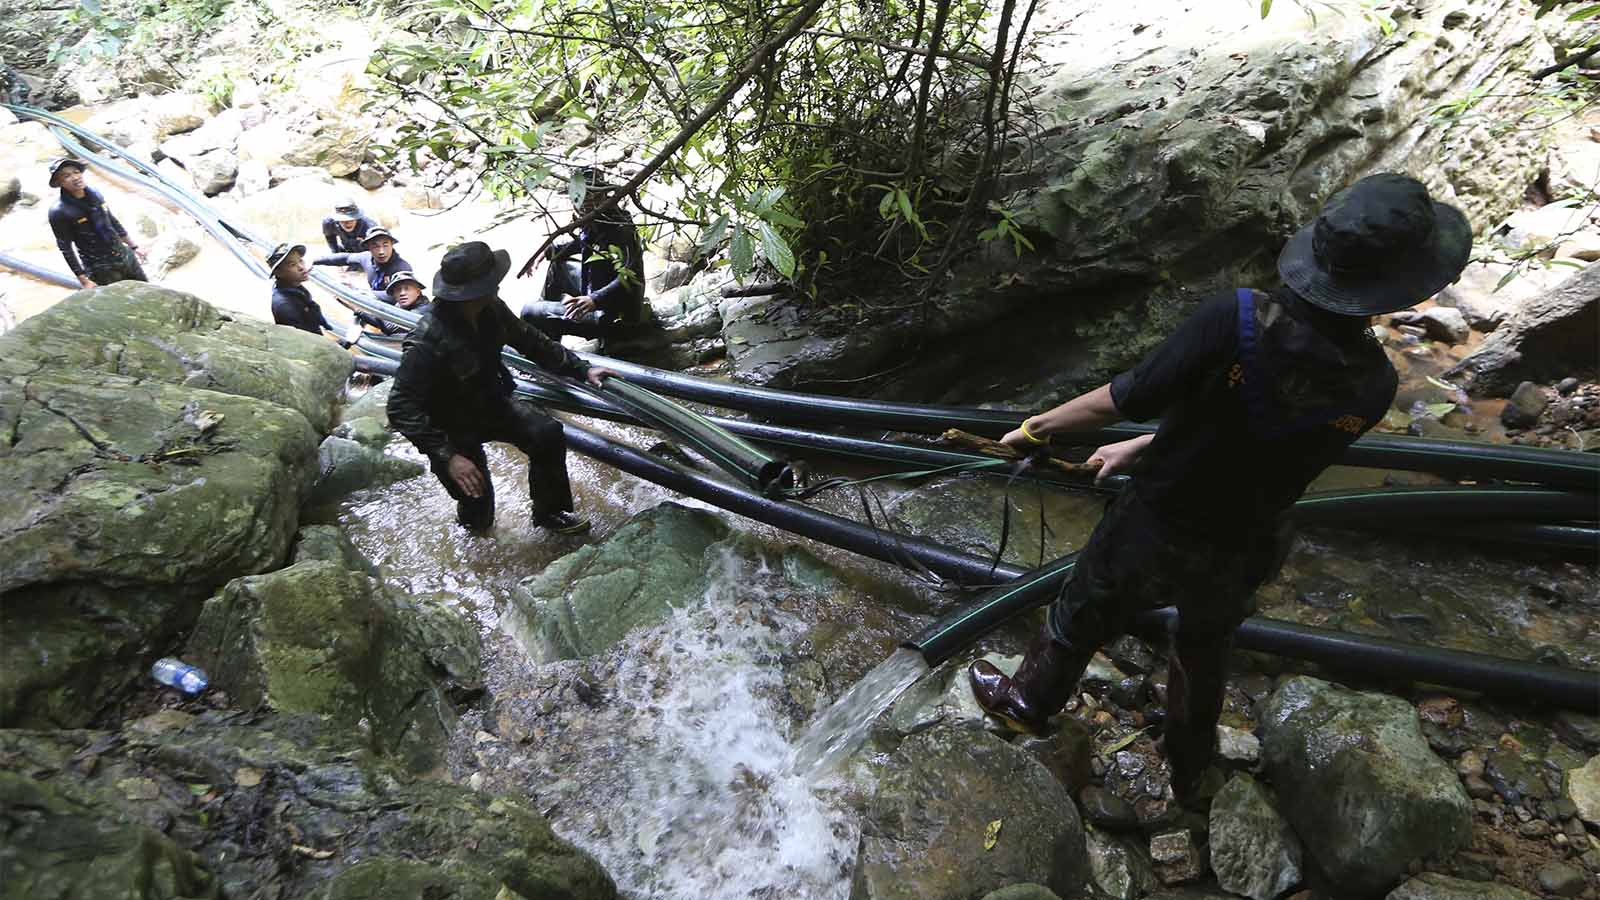 חיילים מניחים צינורות למנוע את הצפת המערה בה נמצאים הלכודים (AP Photo/Sakchai Lalit)